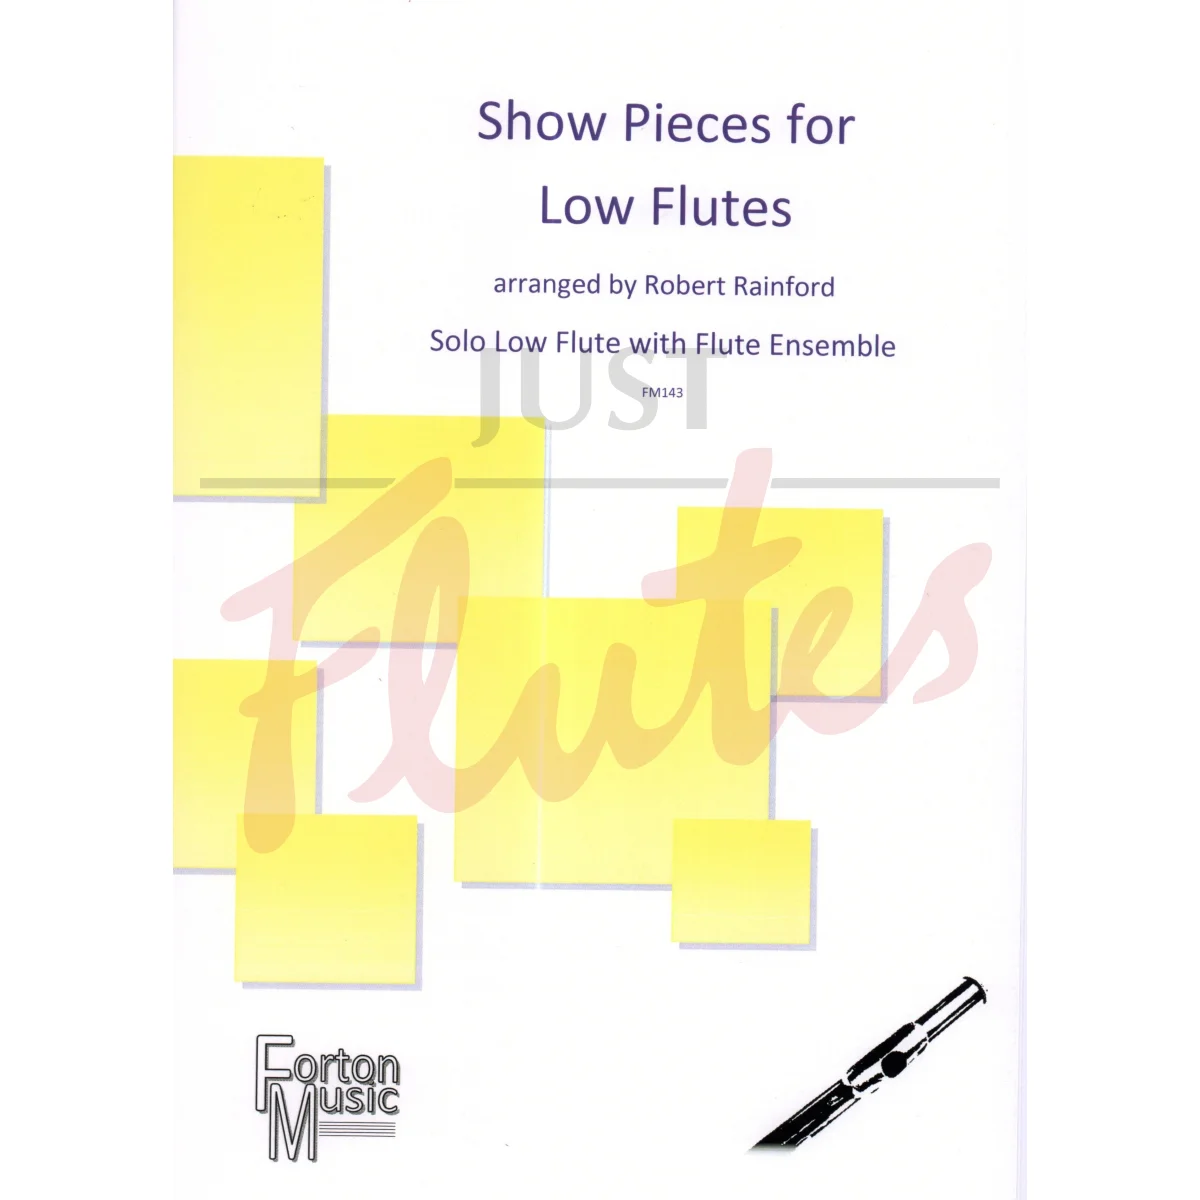 Show Pieces for Low Flutes - Solo Low Flute with Flute Ensemble